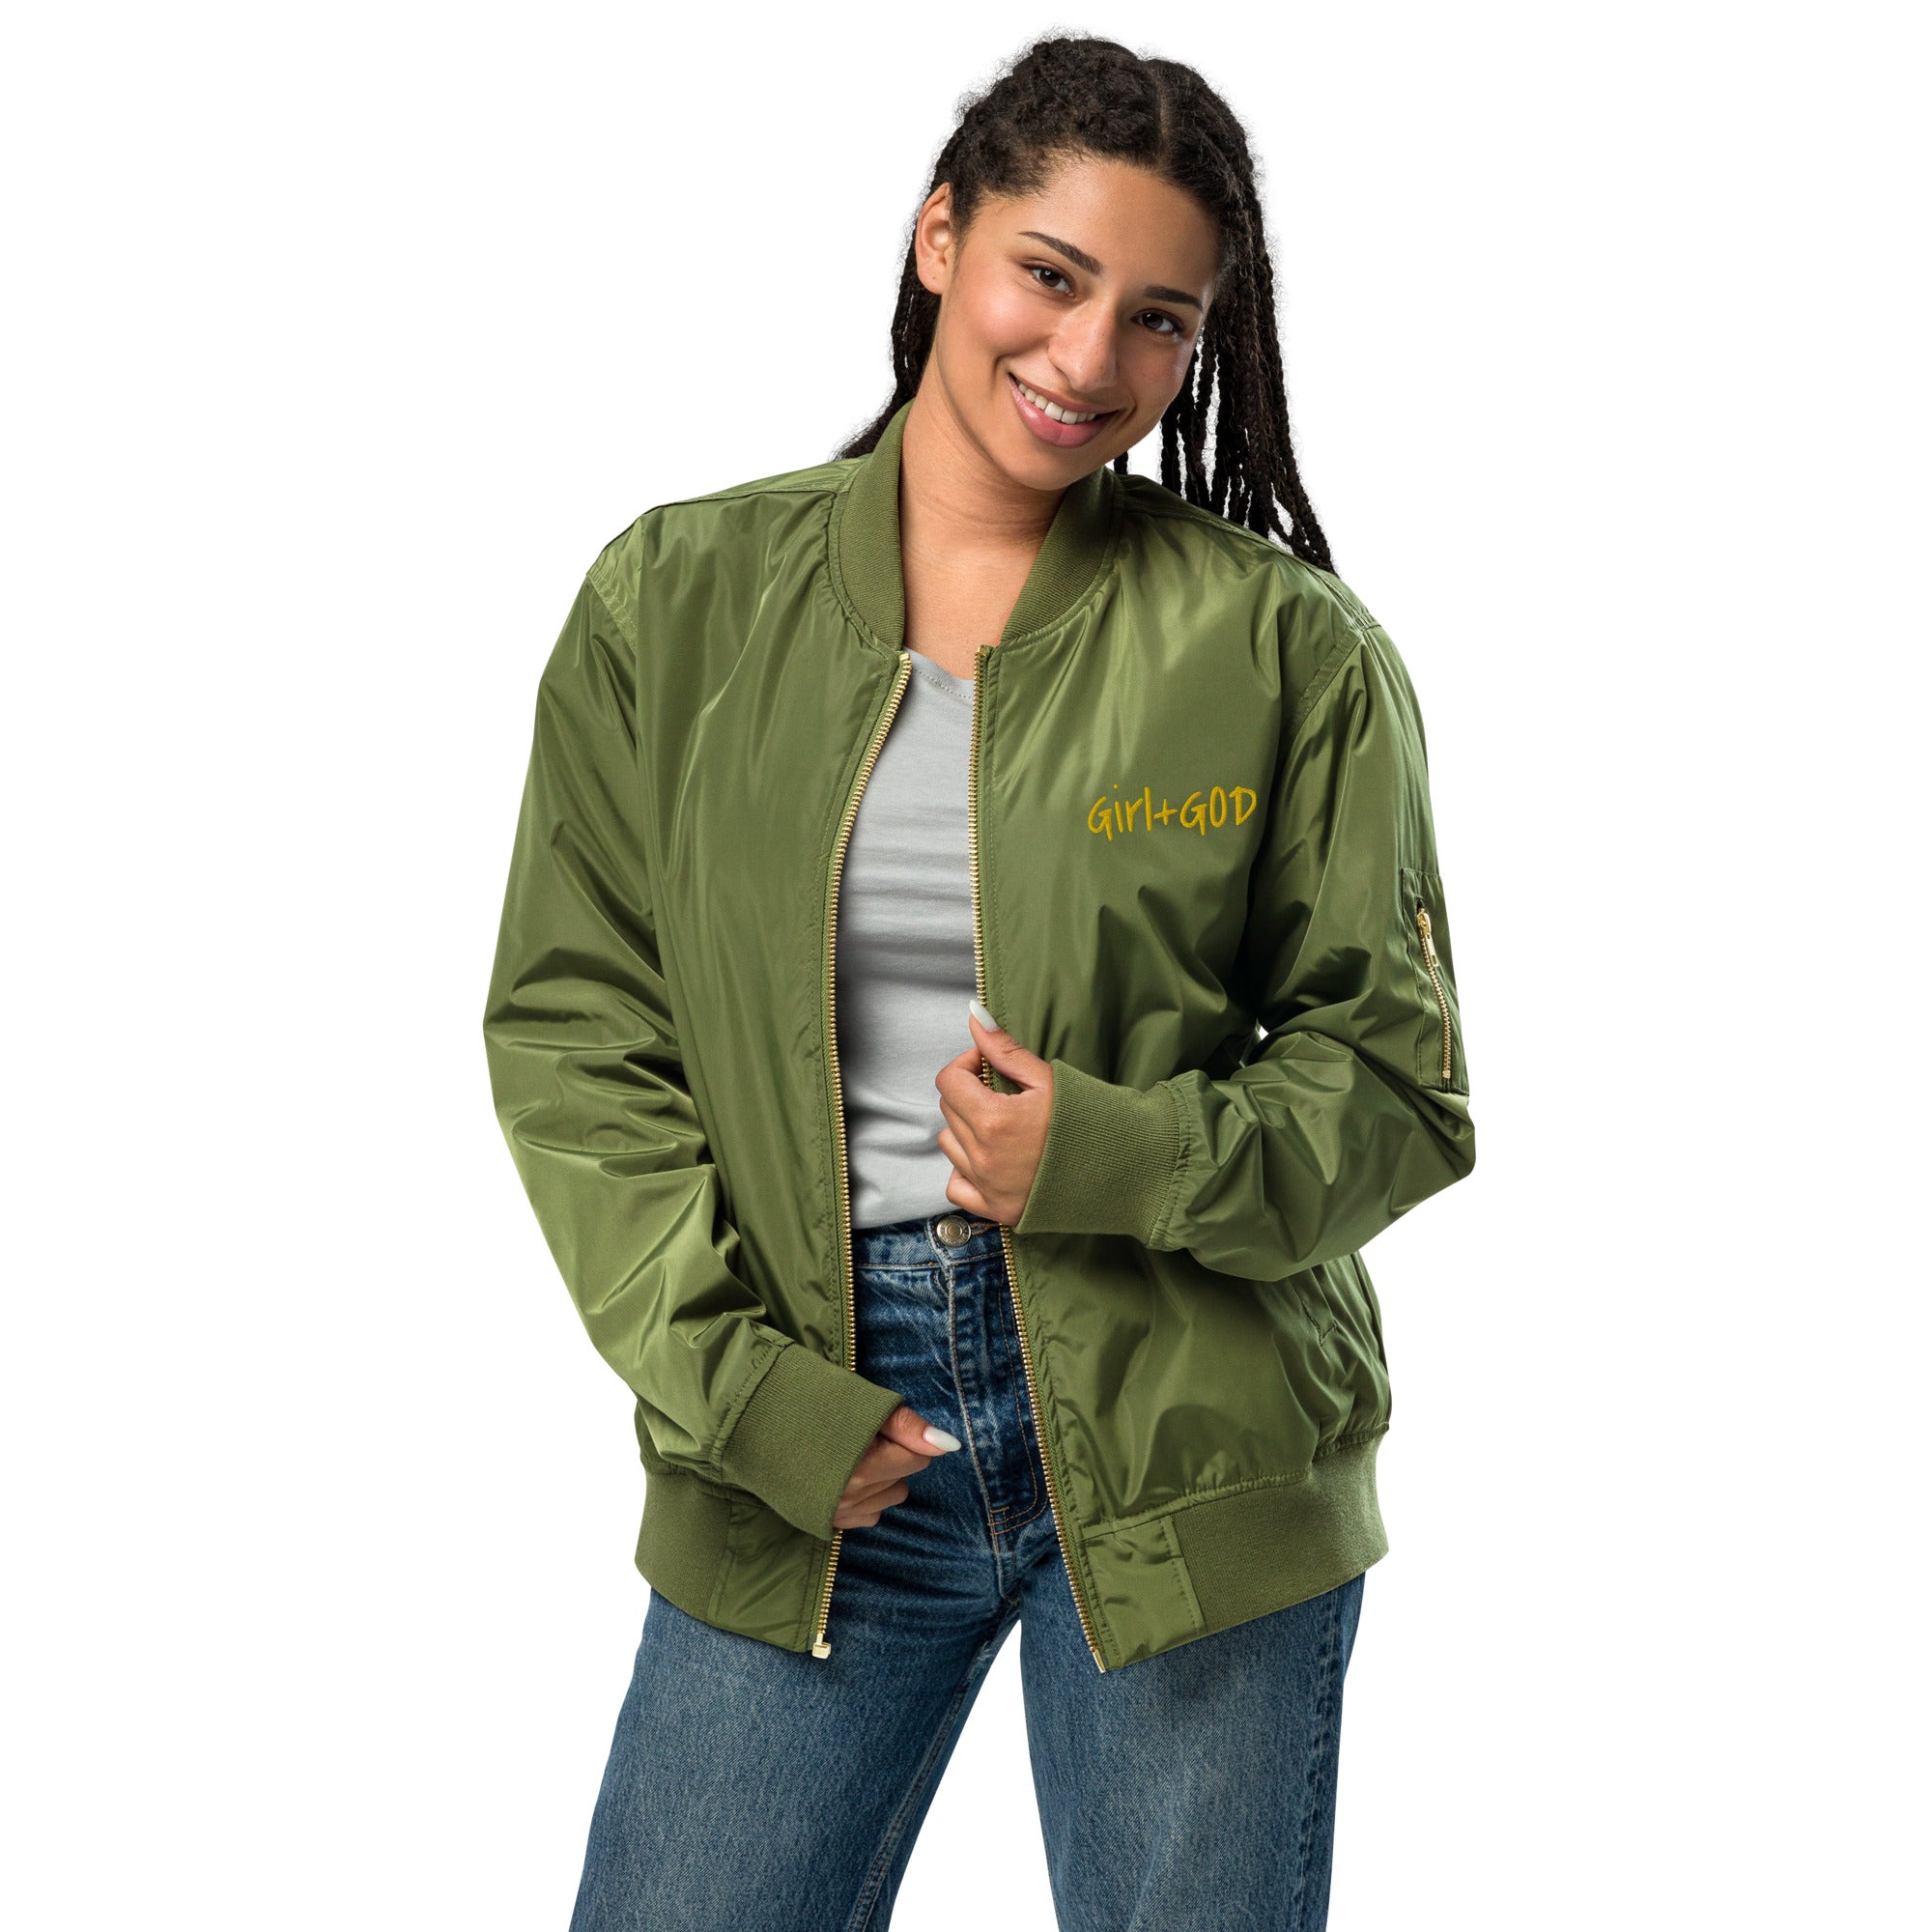 Girl+God Premium Bomber Jacket - Confident in Green